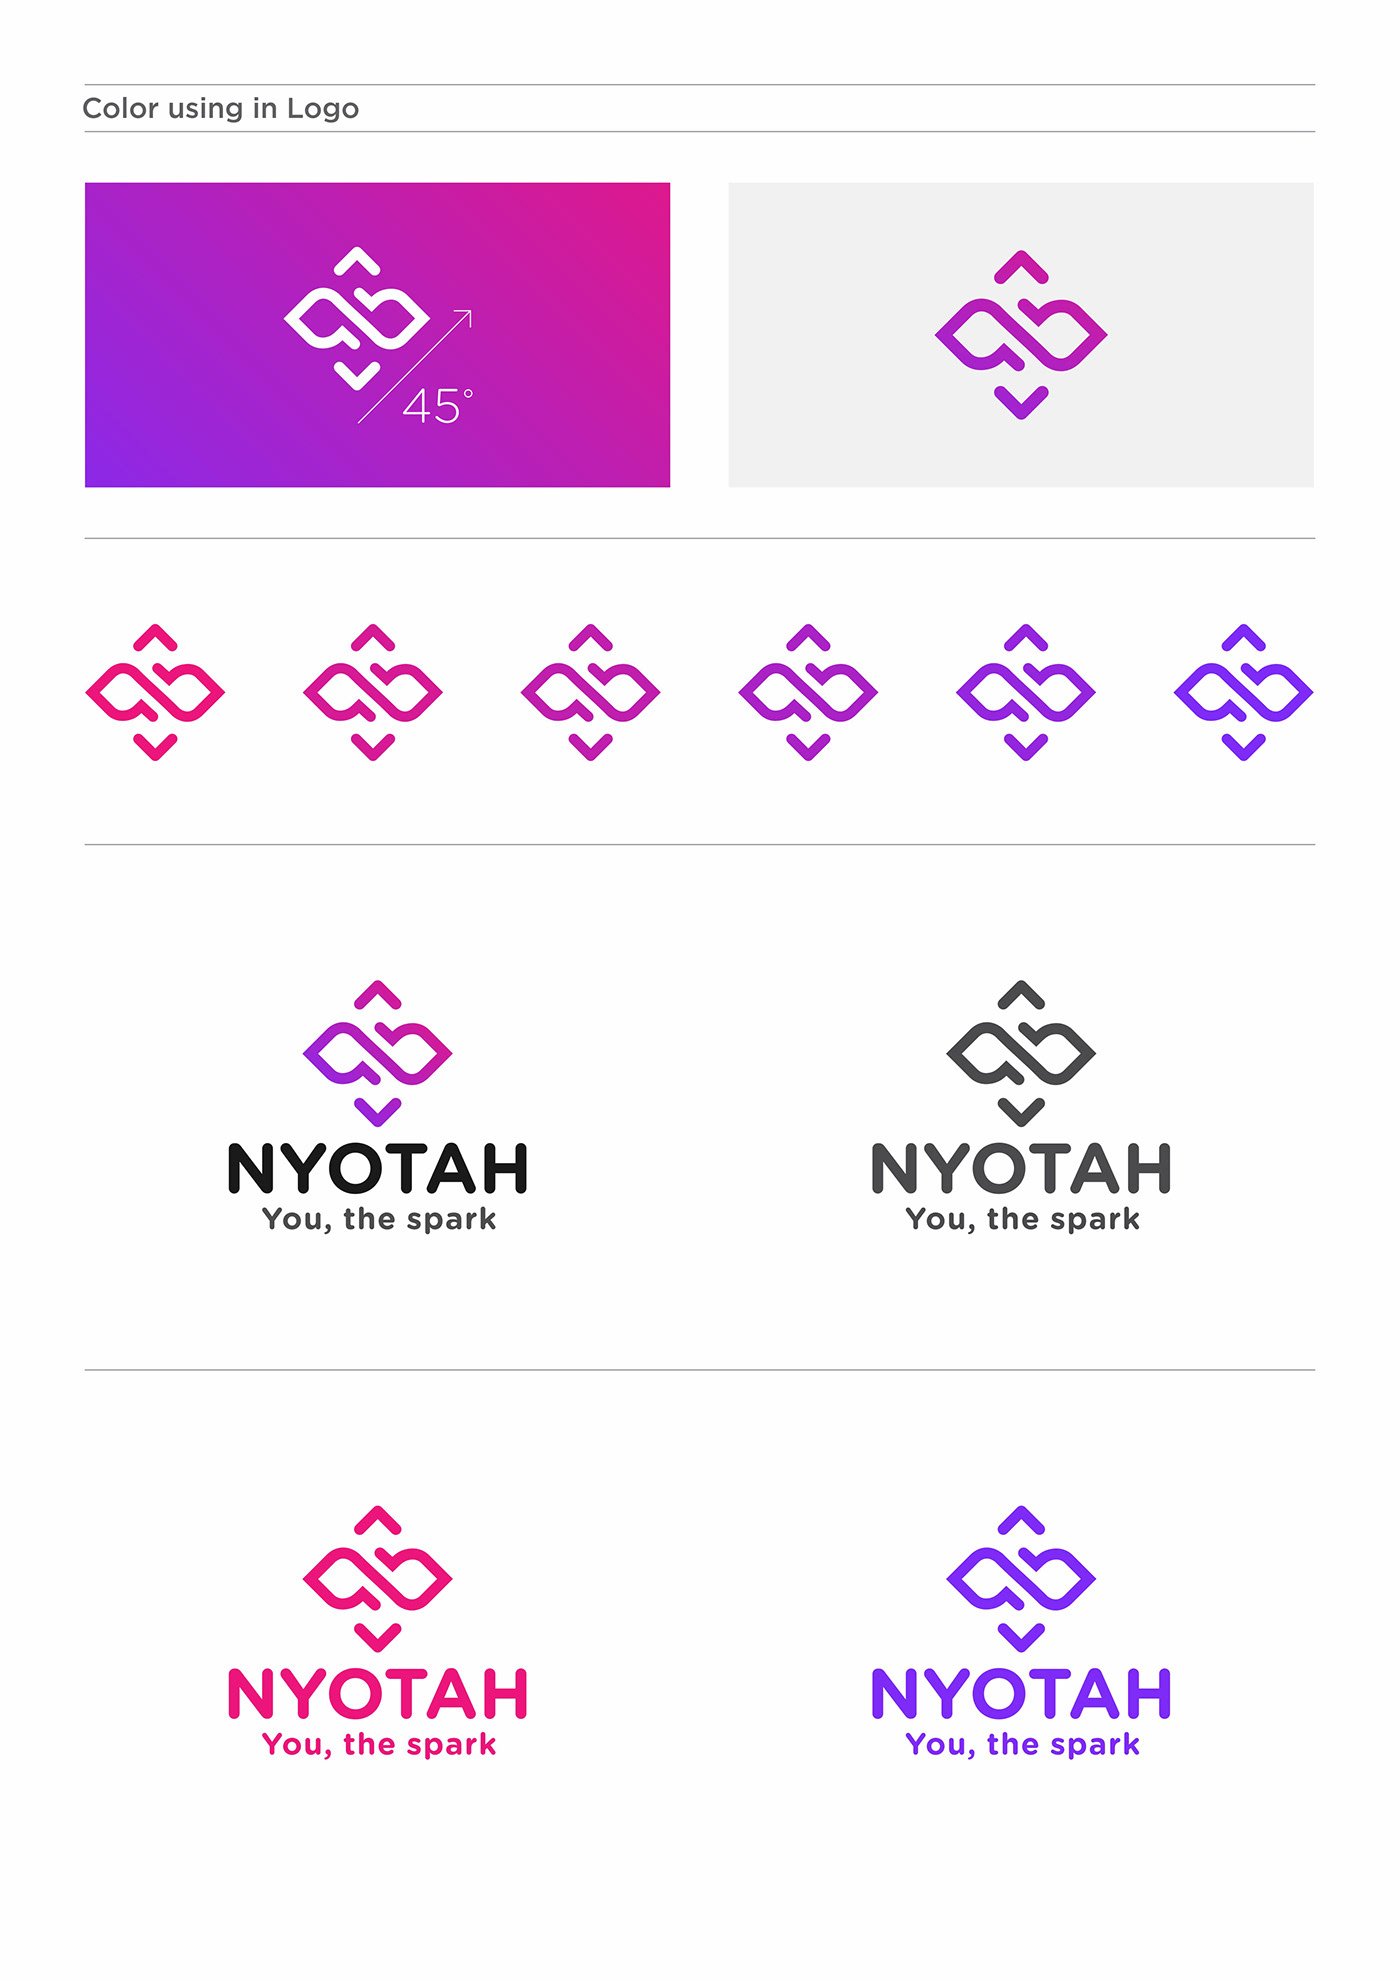 Brand Design brand identity identidade visual identity Logo Design logos Logotype typography   visual identity